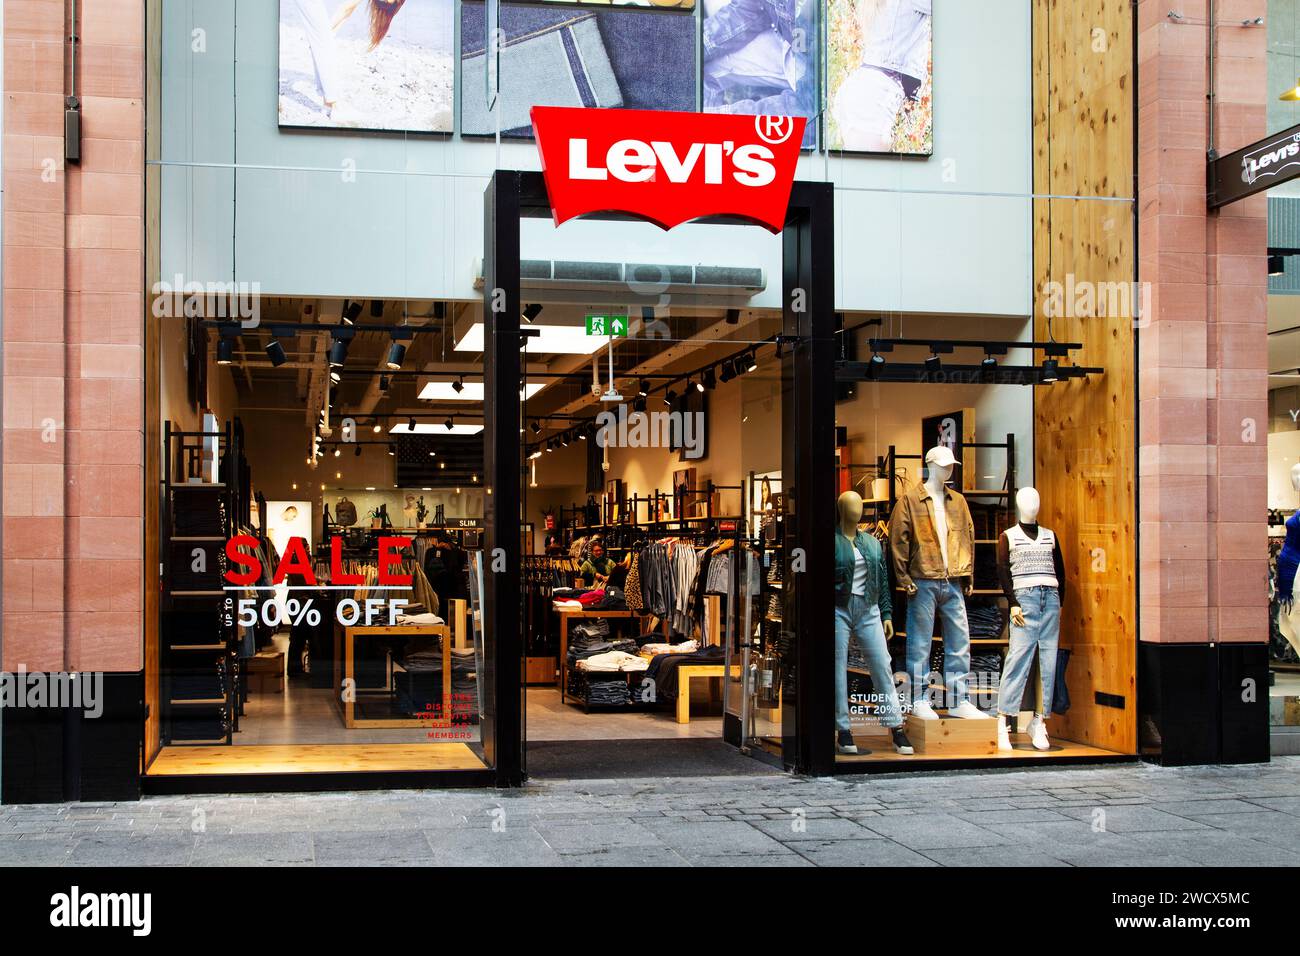 Levis Shop front a Princesshay Exeter Regno Unito, durante le vendite di gennaio con "fino al 50% di sconto" in rilievo sul finestrino anteriore Foto Stock